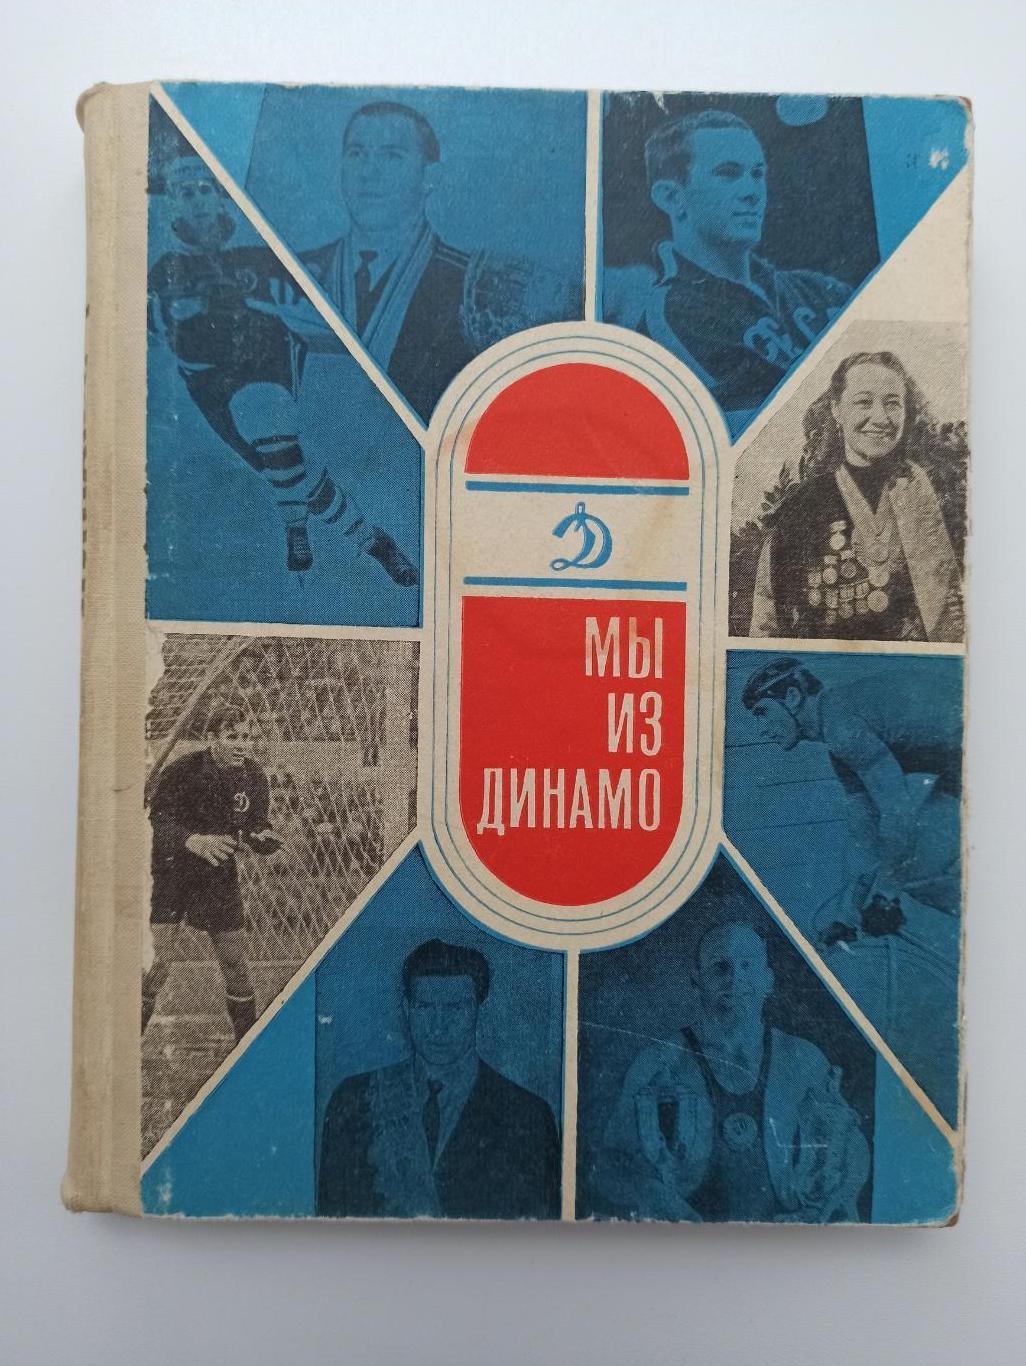 Физкультура и спорт, Мы из Динамо, Москва, 1968г.